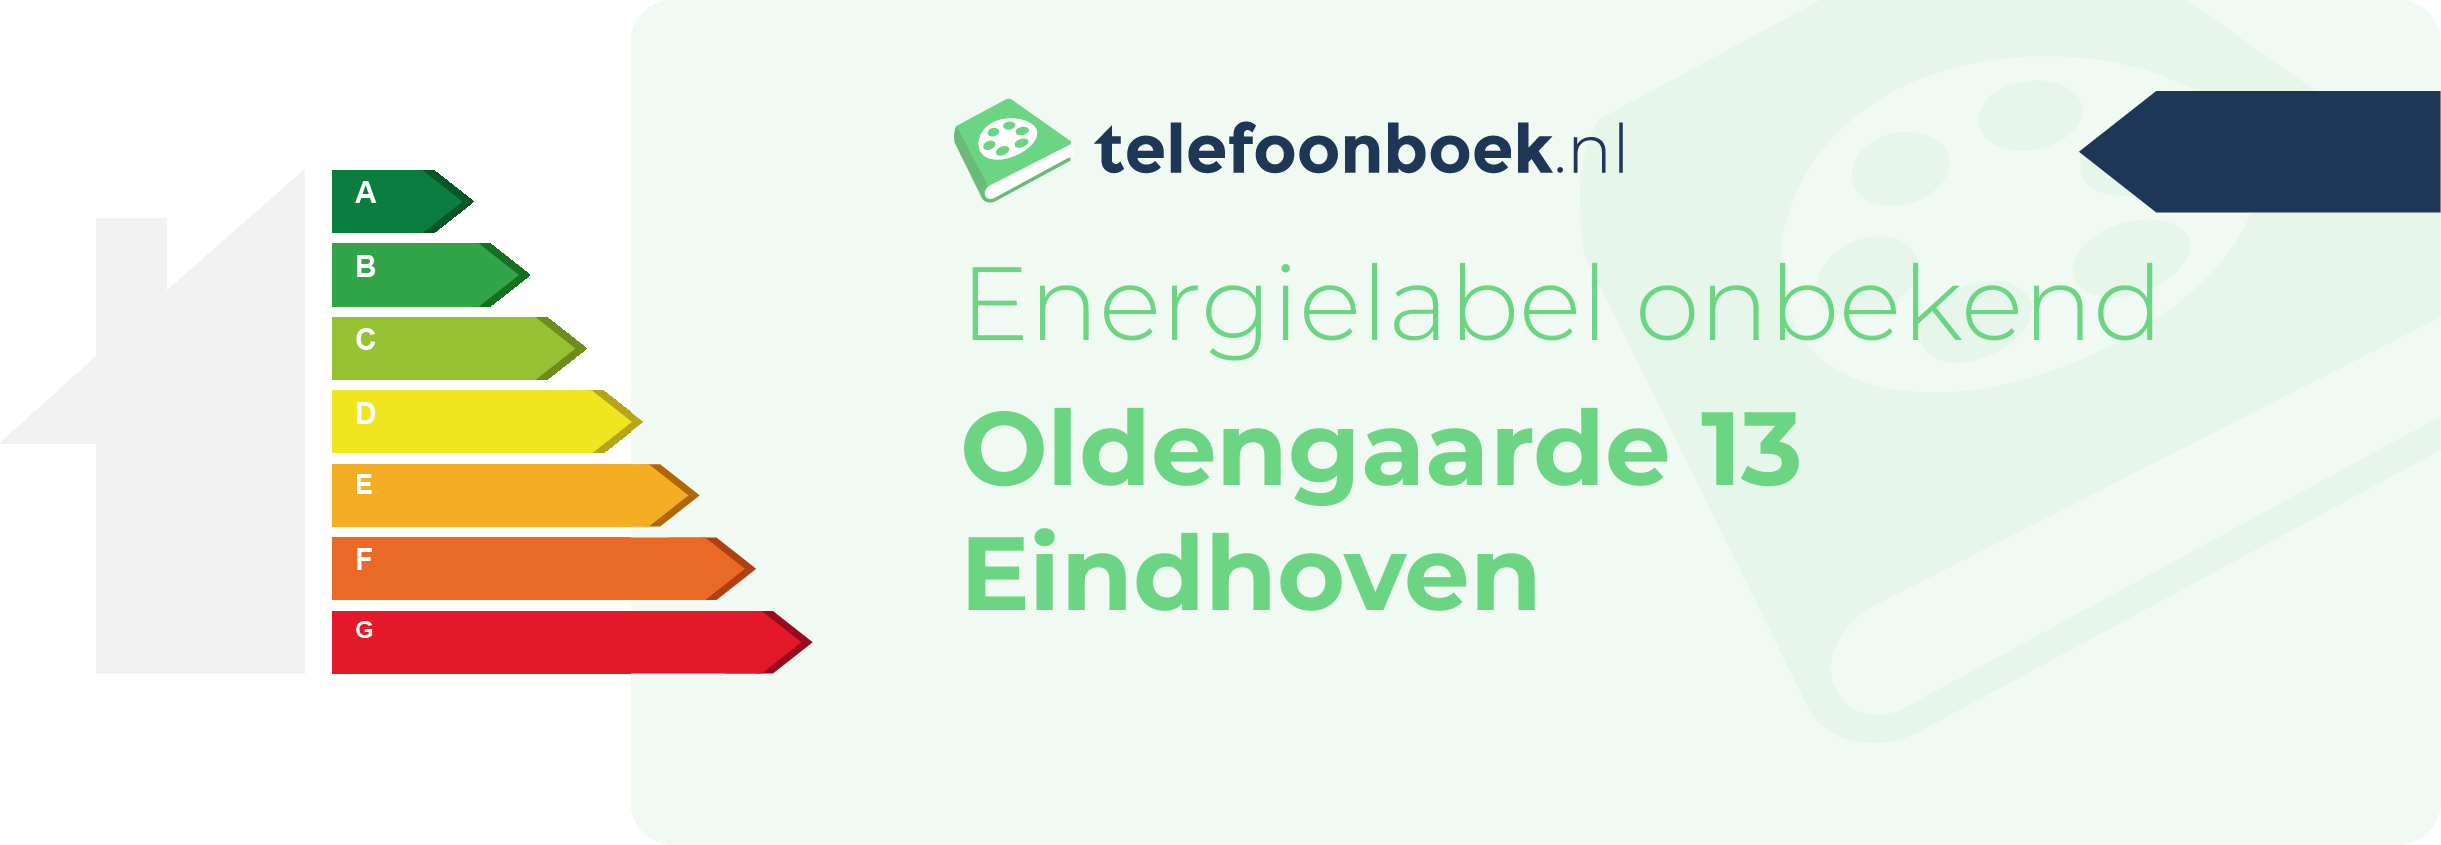 Energielabel Oldengaarde 13 Eindhoven